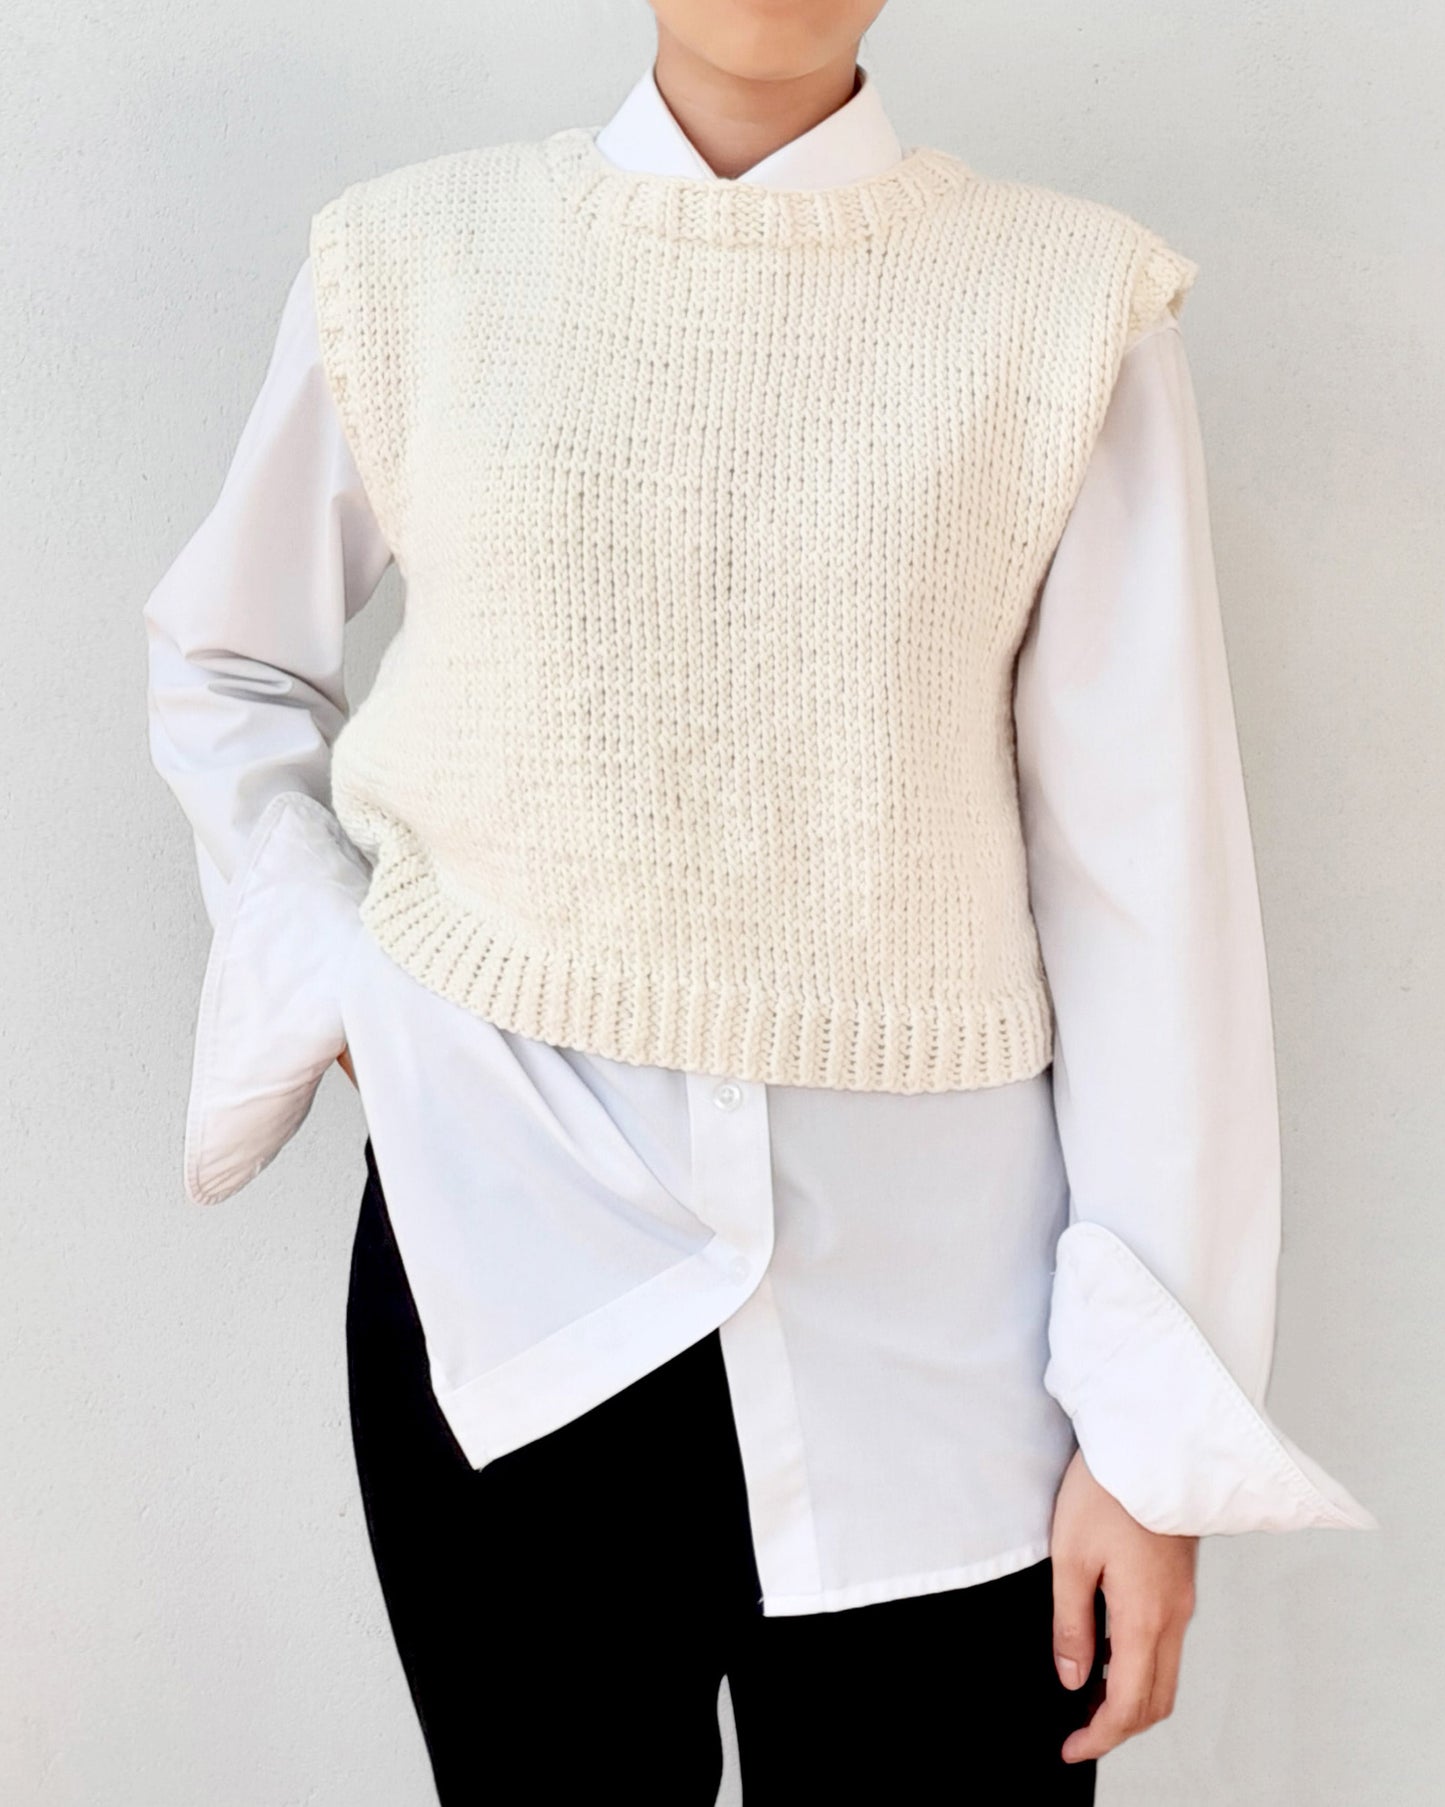 Vest No.1 | Easy knitting pattern for beginners